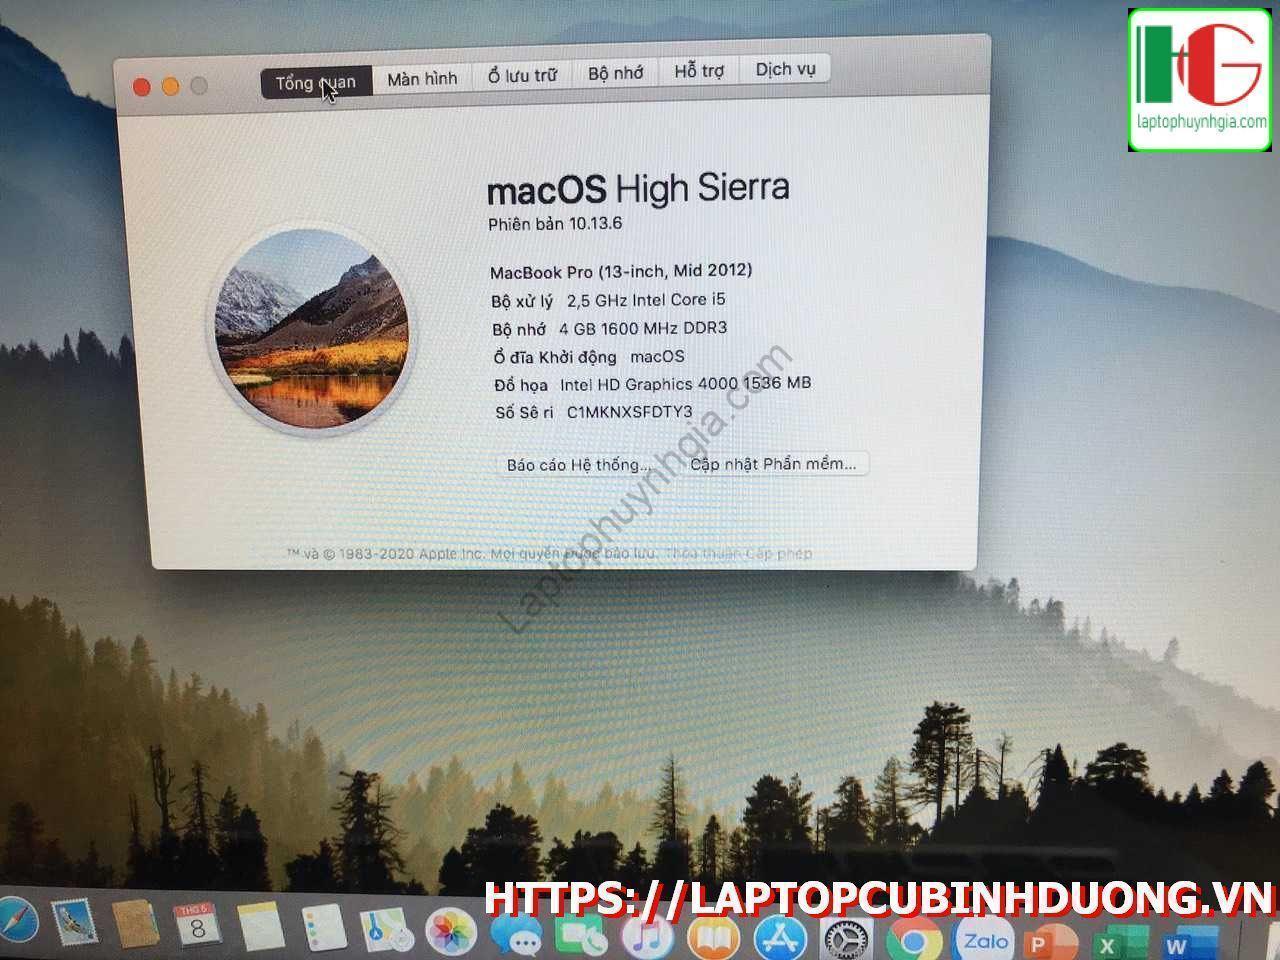 Macbook Pro 2012 I5 Ram 4g Ssd 256g Lcd 13 Laptopcubinhduong.vn 4 [kích Thước Gốc] Result